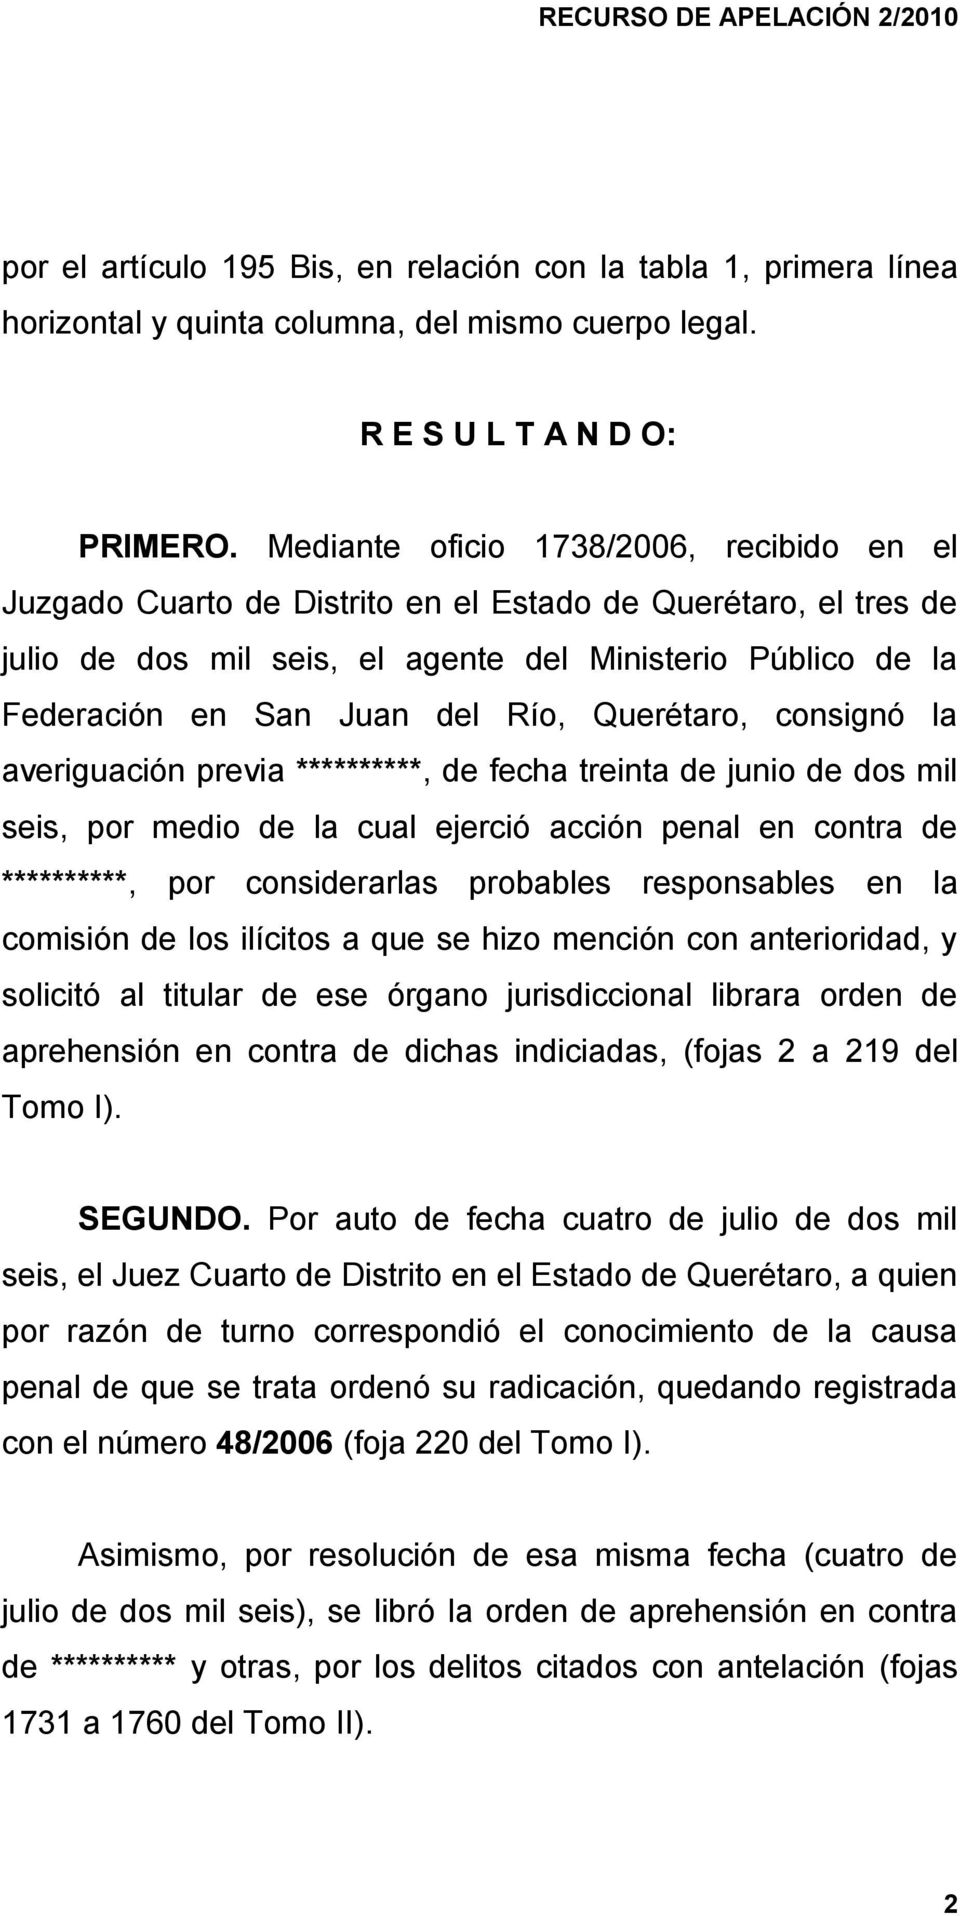 Río, Querétaro, consignó la averiguación previa **********, de fecha treinta de junio de dos mil seis, por medio de la cual ejerció acción penal en contra de **********, por considerarlas probables